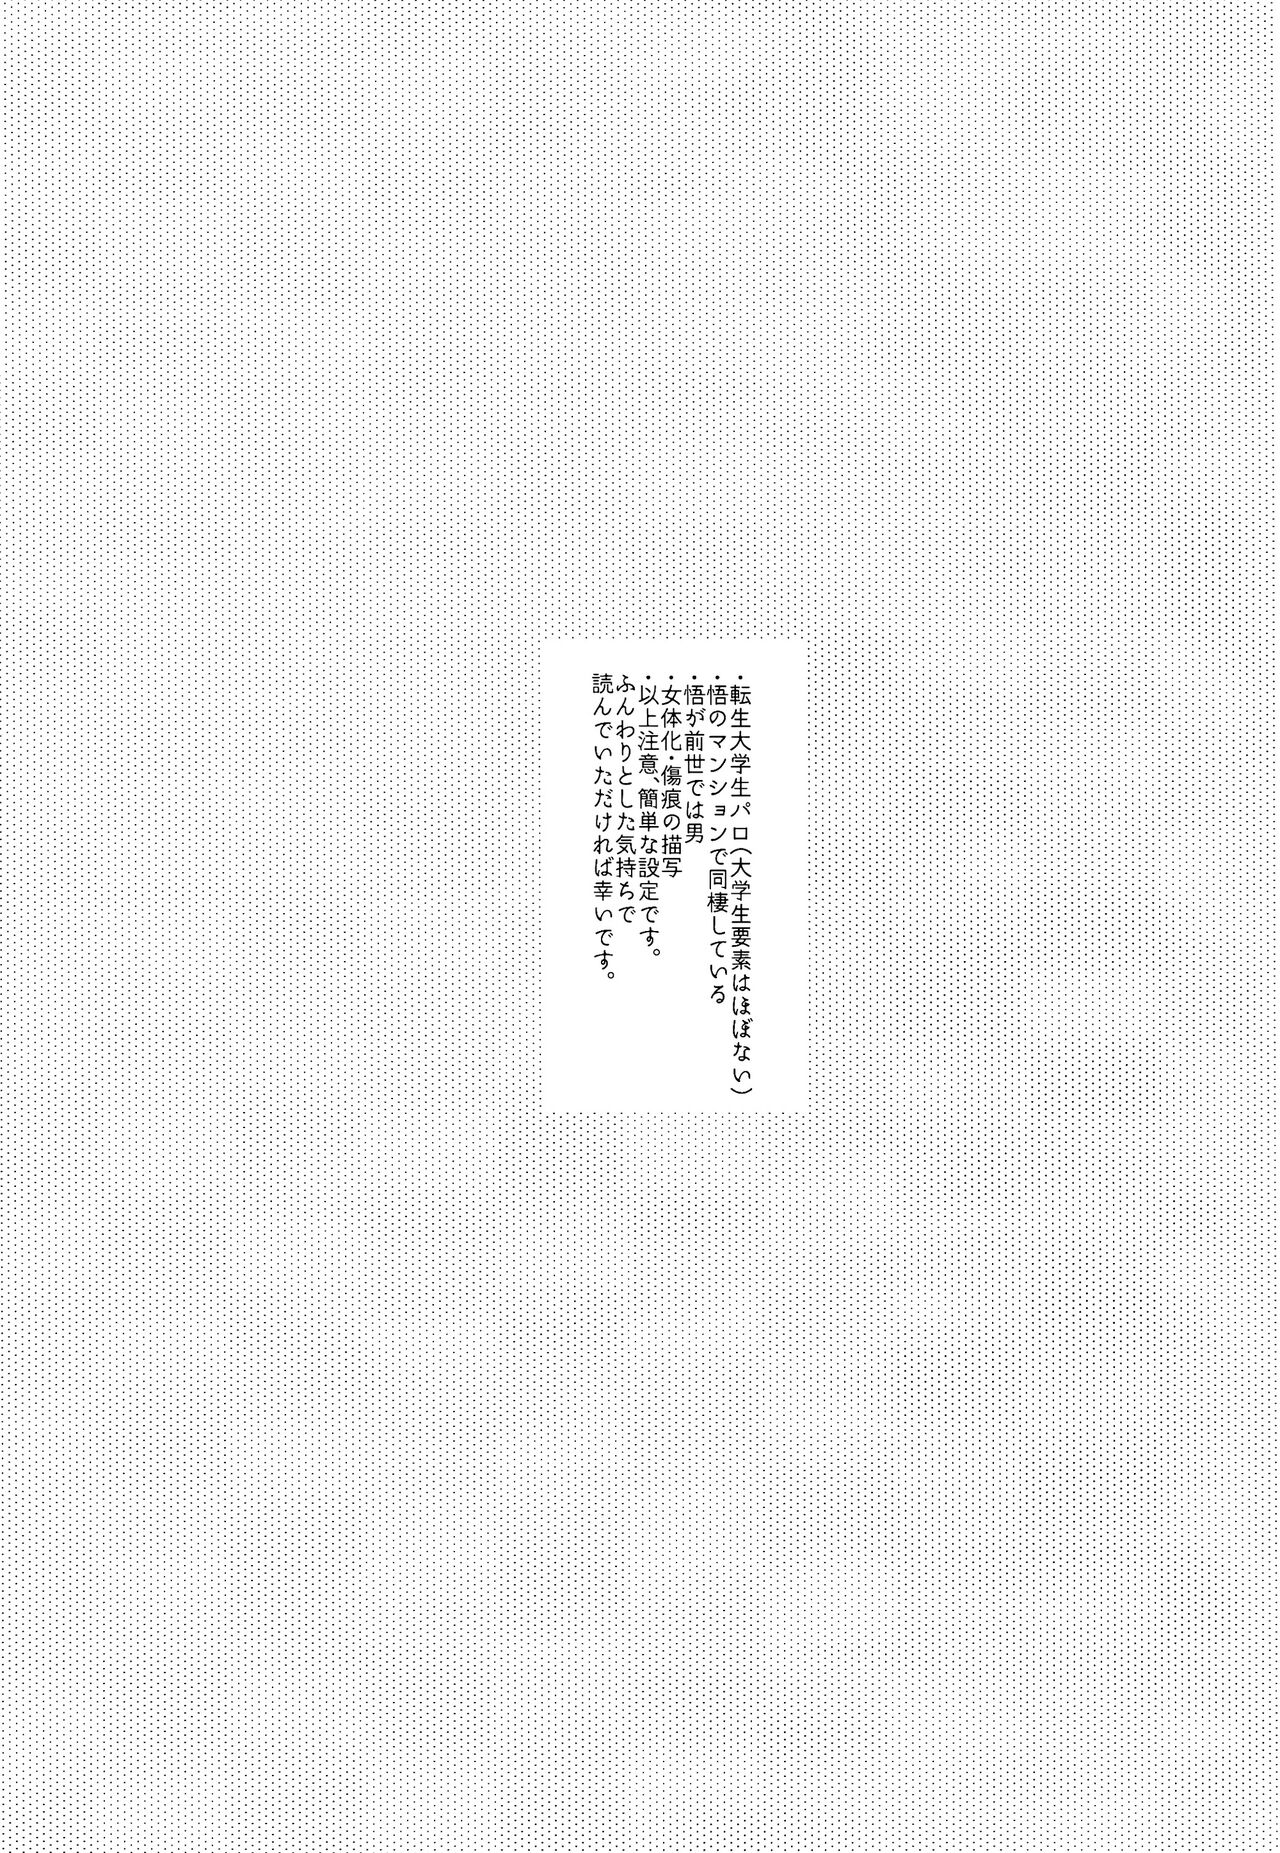 [アルミカン(コタ)]12月24日午前0時の告白 (呪術廻戦)